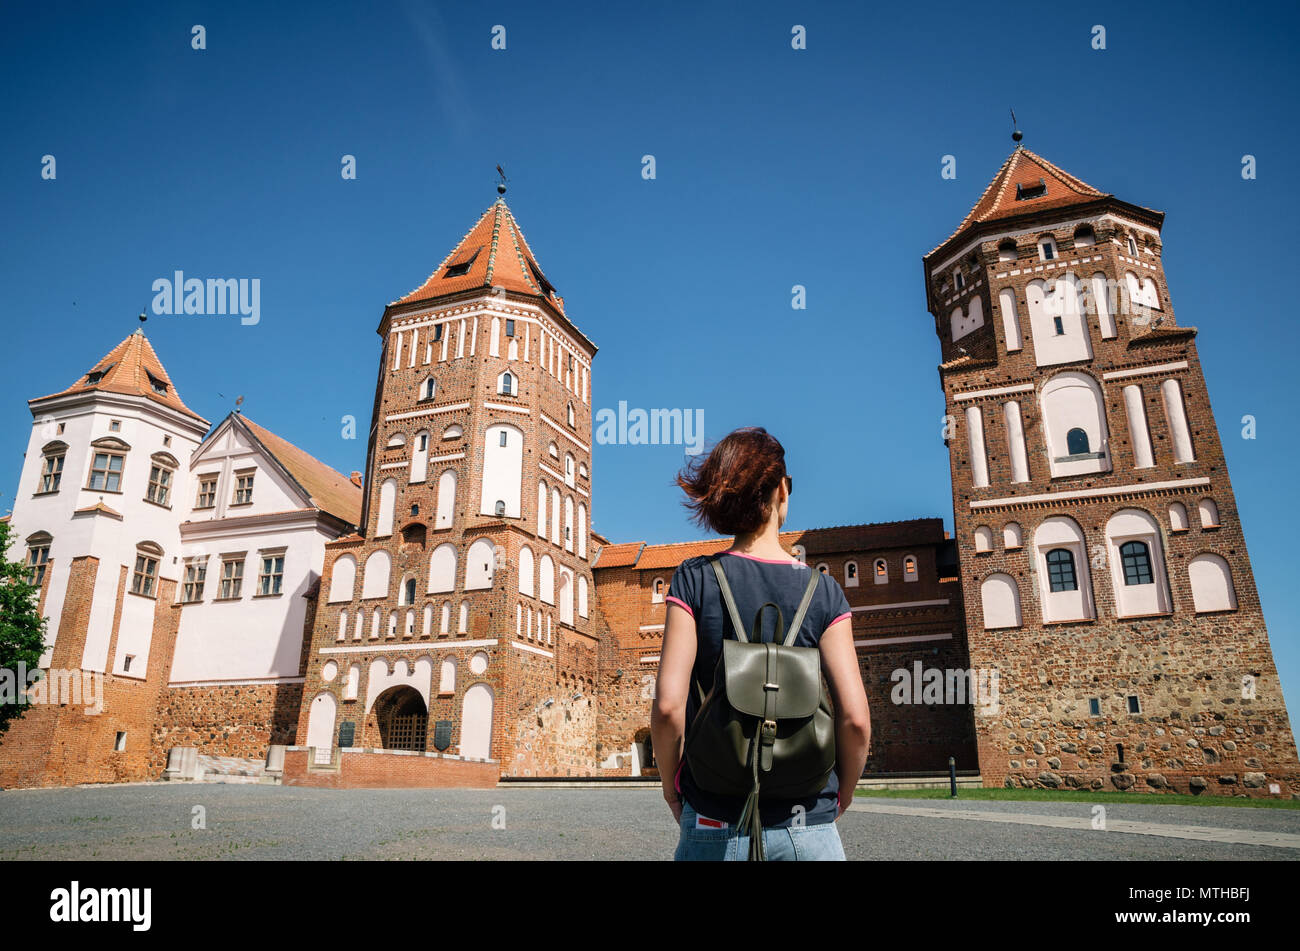 Young woman traveler avec sac à dos ressemble au château médiéval de Mir, Bélarus Banque D'Images